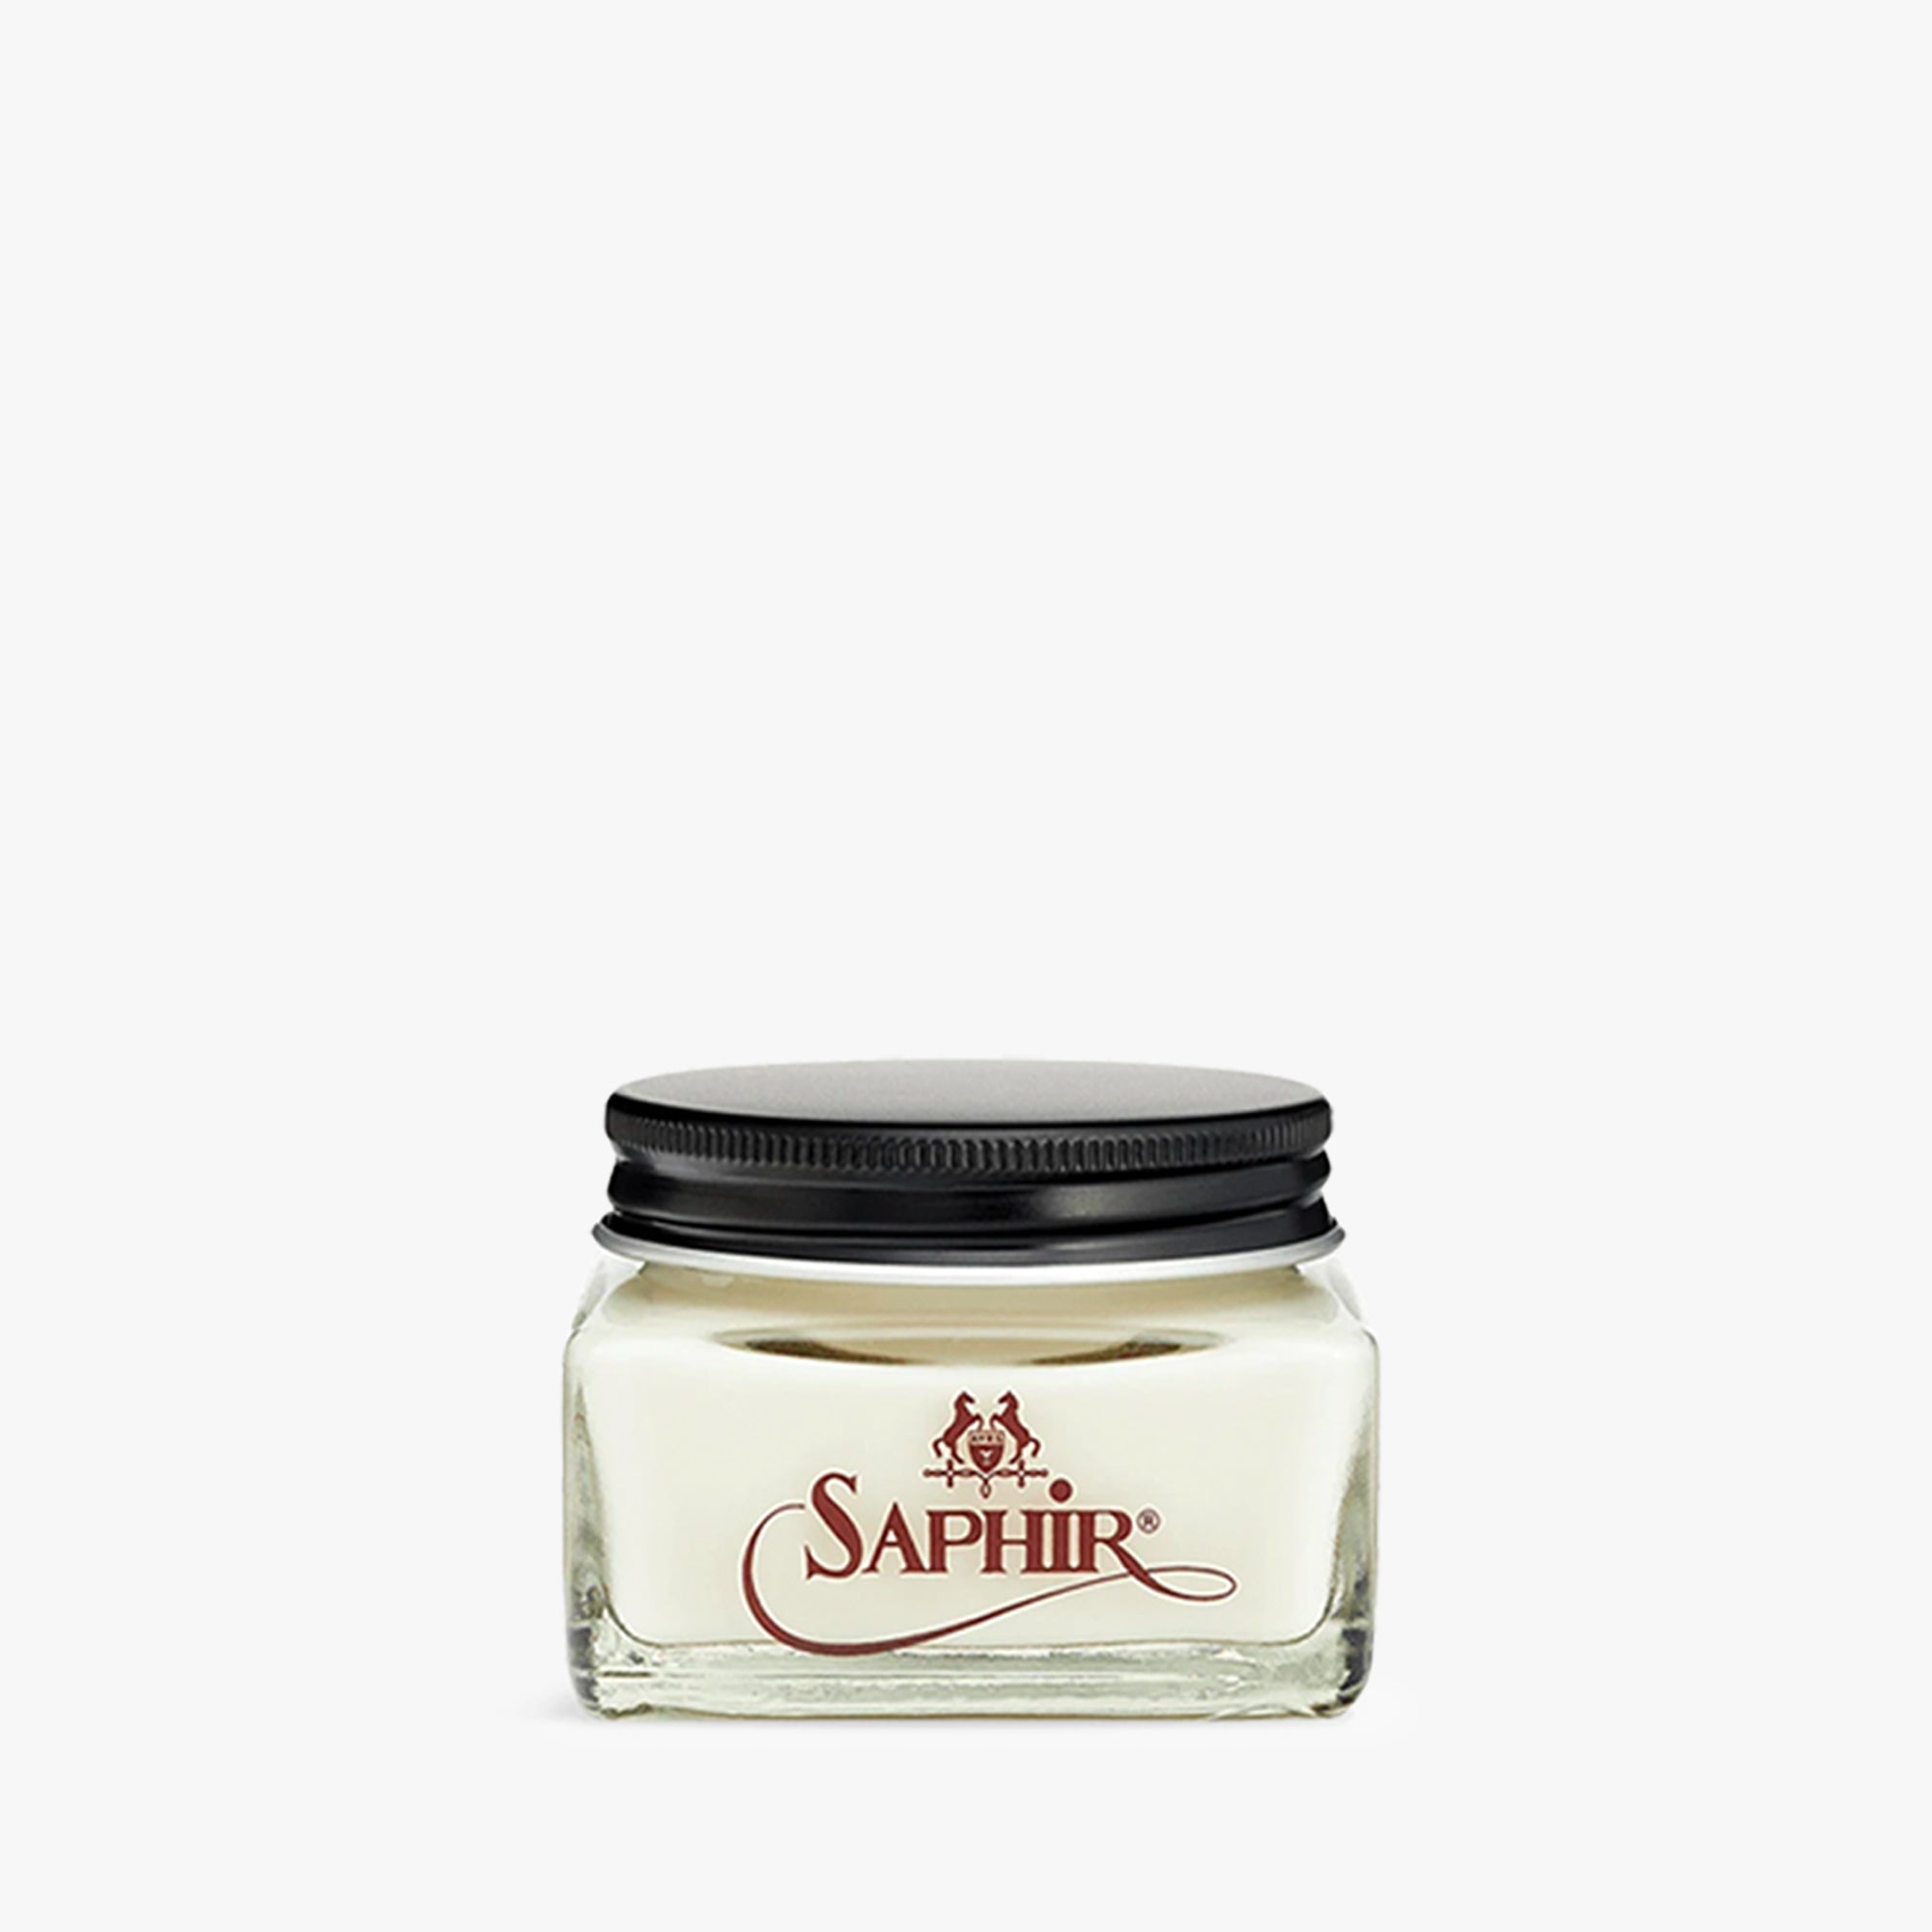 Saphir Creme 1925 - White